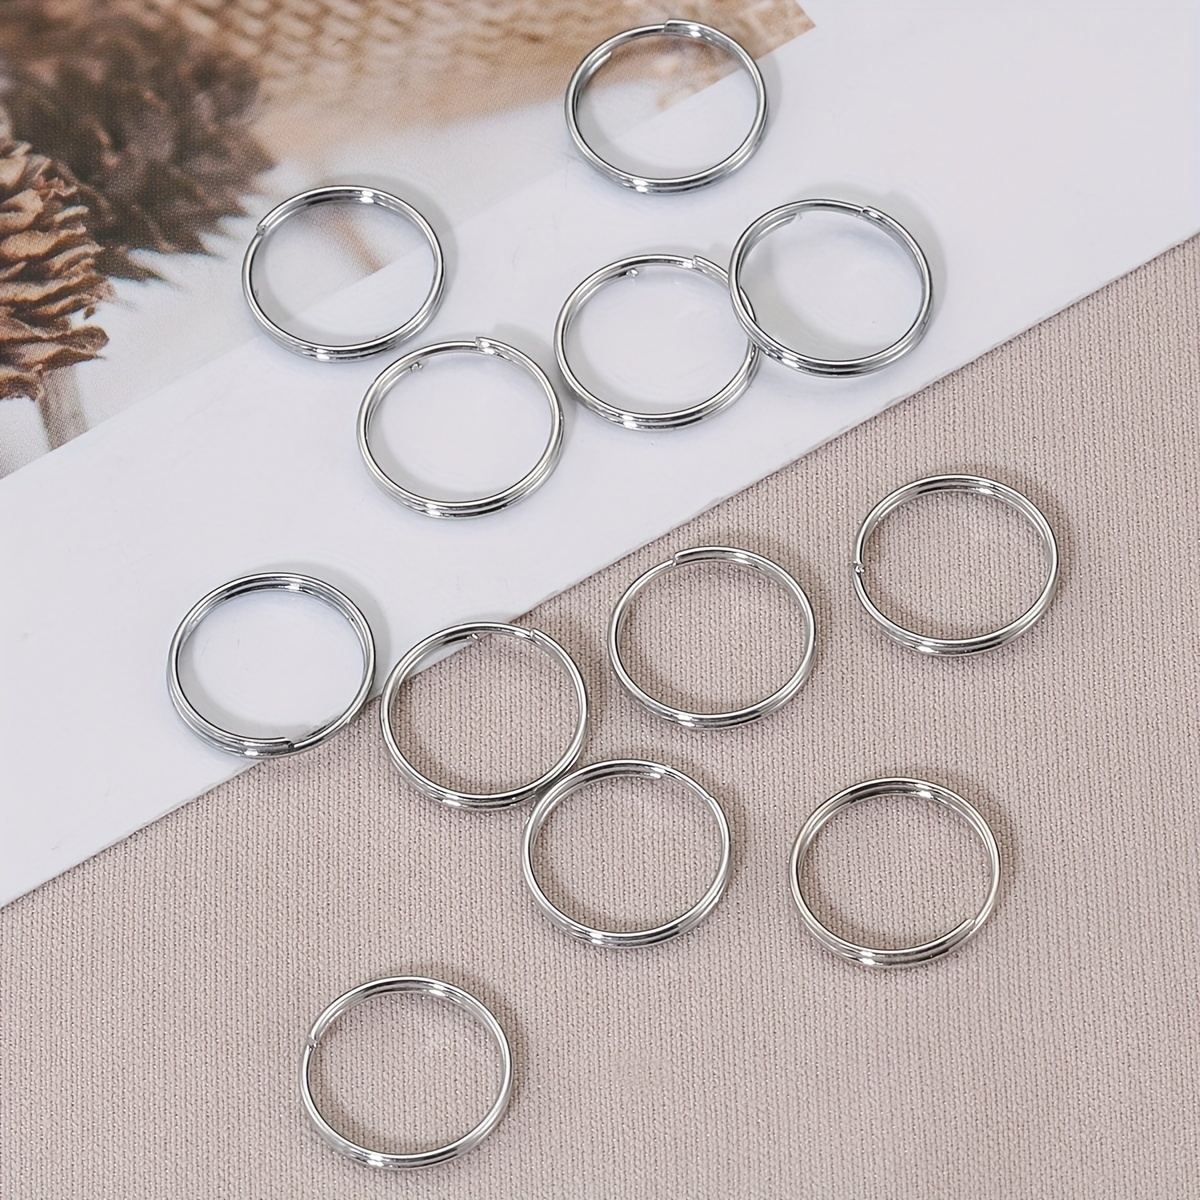 Stainless Steel Key Rings 3/4 (20mm) Split Ring, (50 pcs)